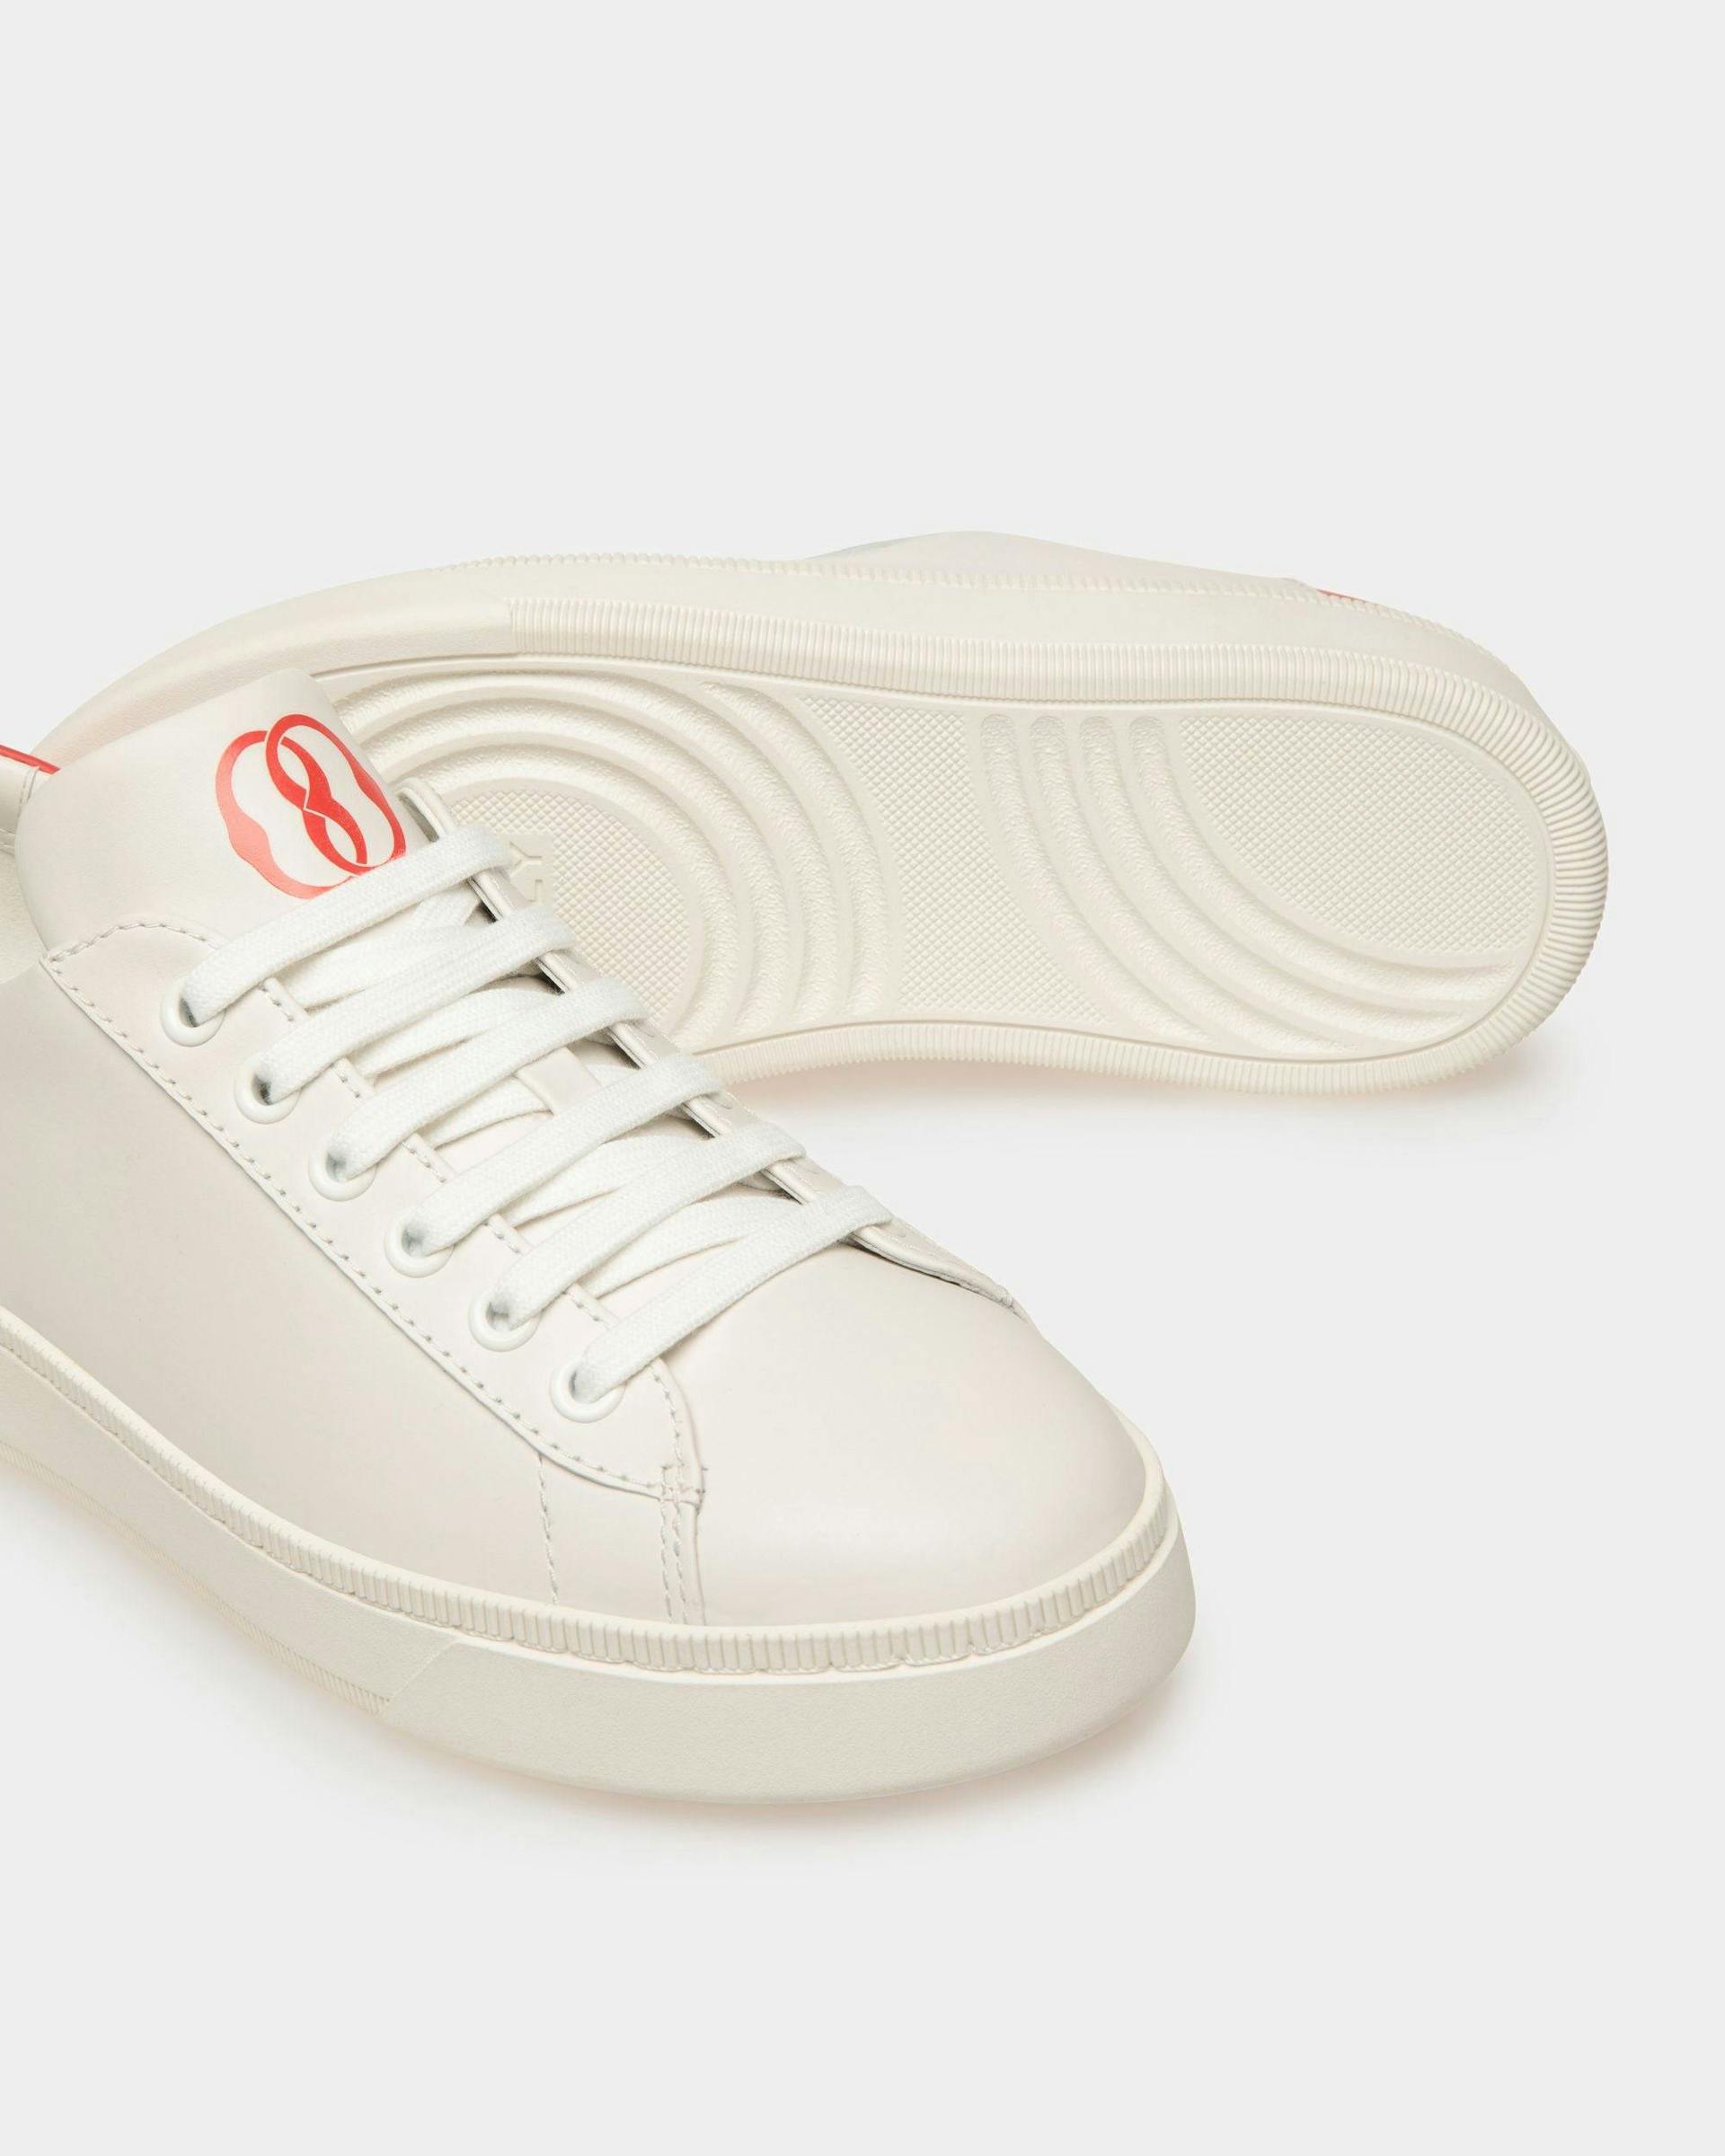 Women's Raise Sneaker in White Leather | Bally | Still Life Below